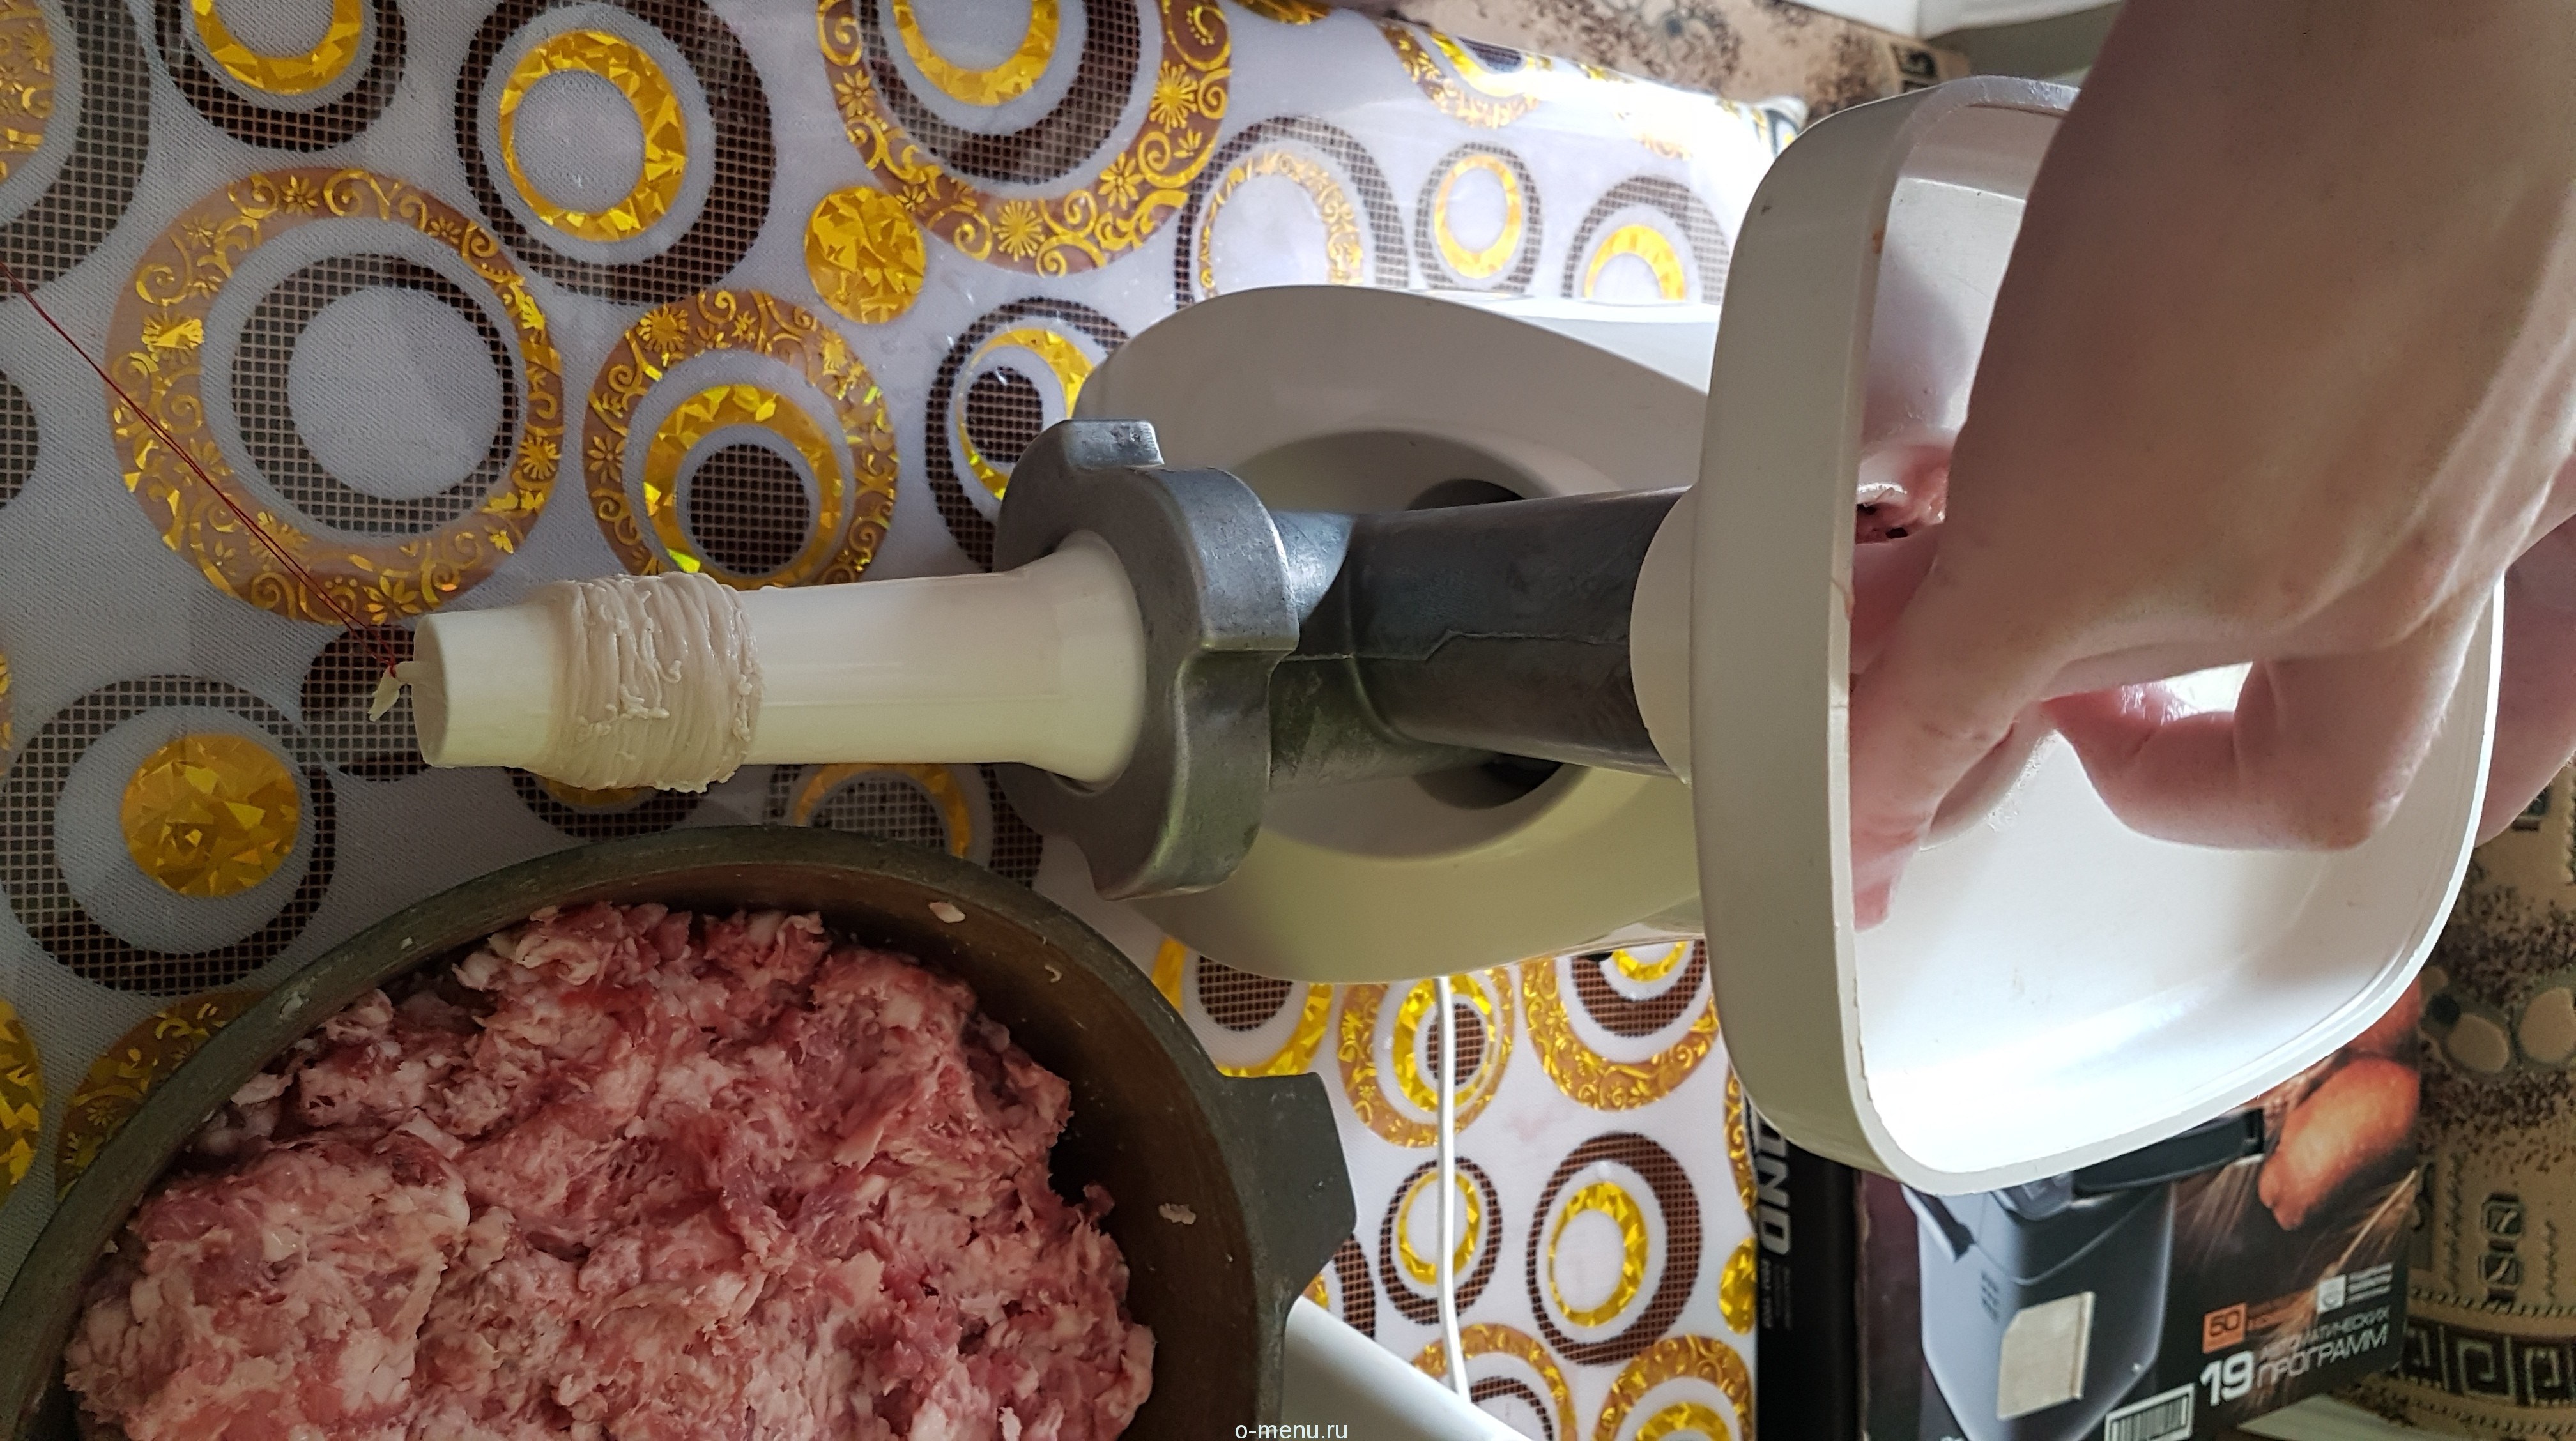 Рецепт домашней колбасы в кишке через мясорубку. Кишка для колбасы на мясорубку. Фарш для домашних колбасок.